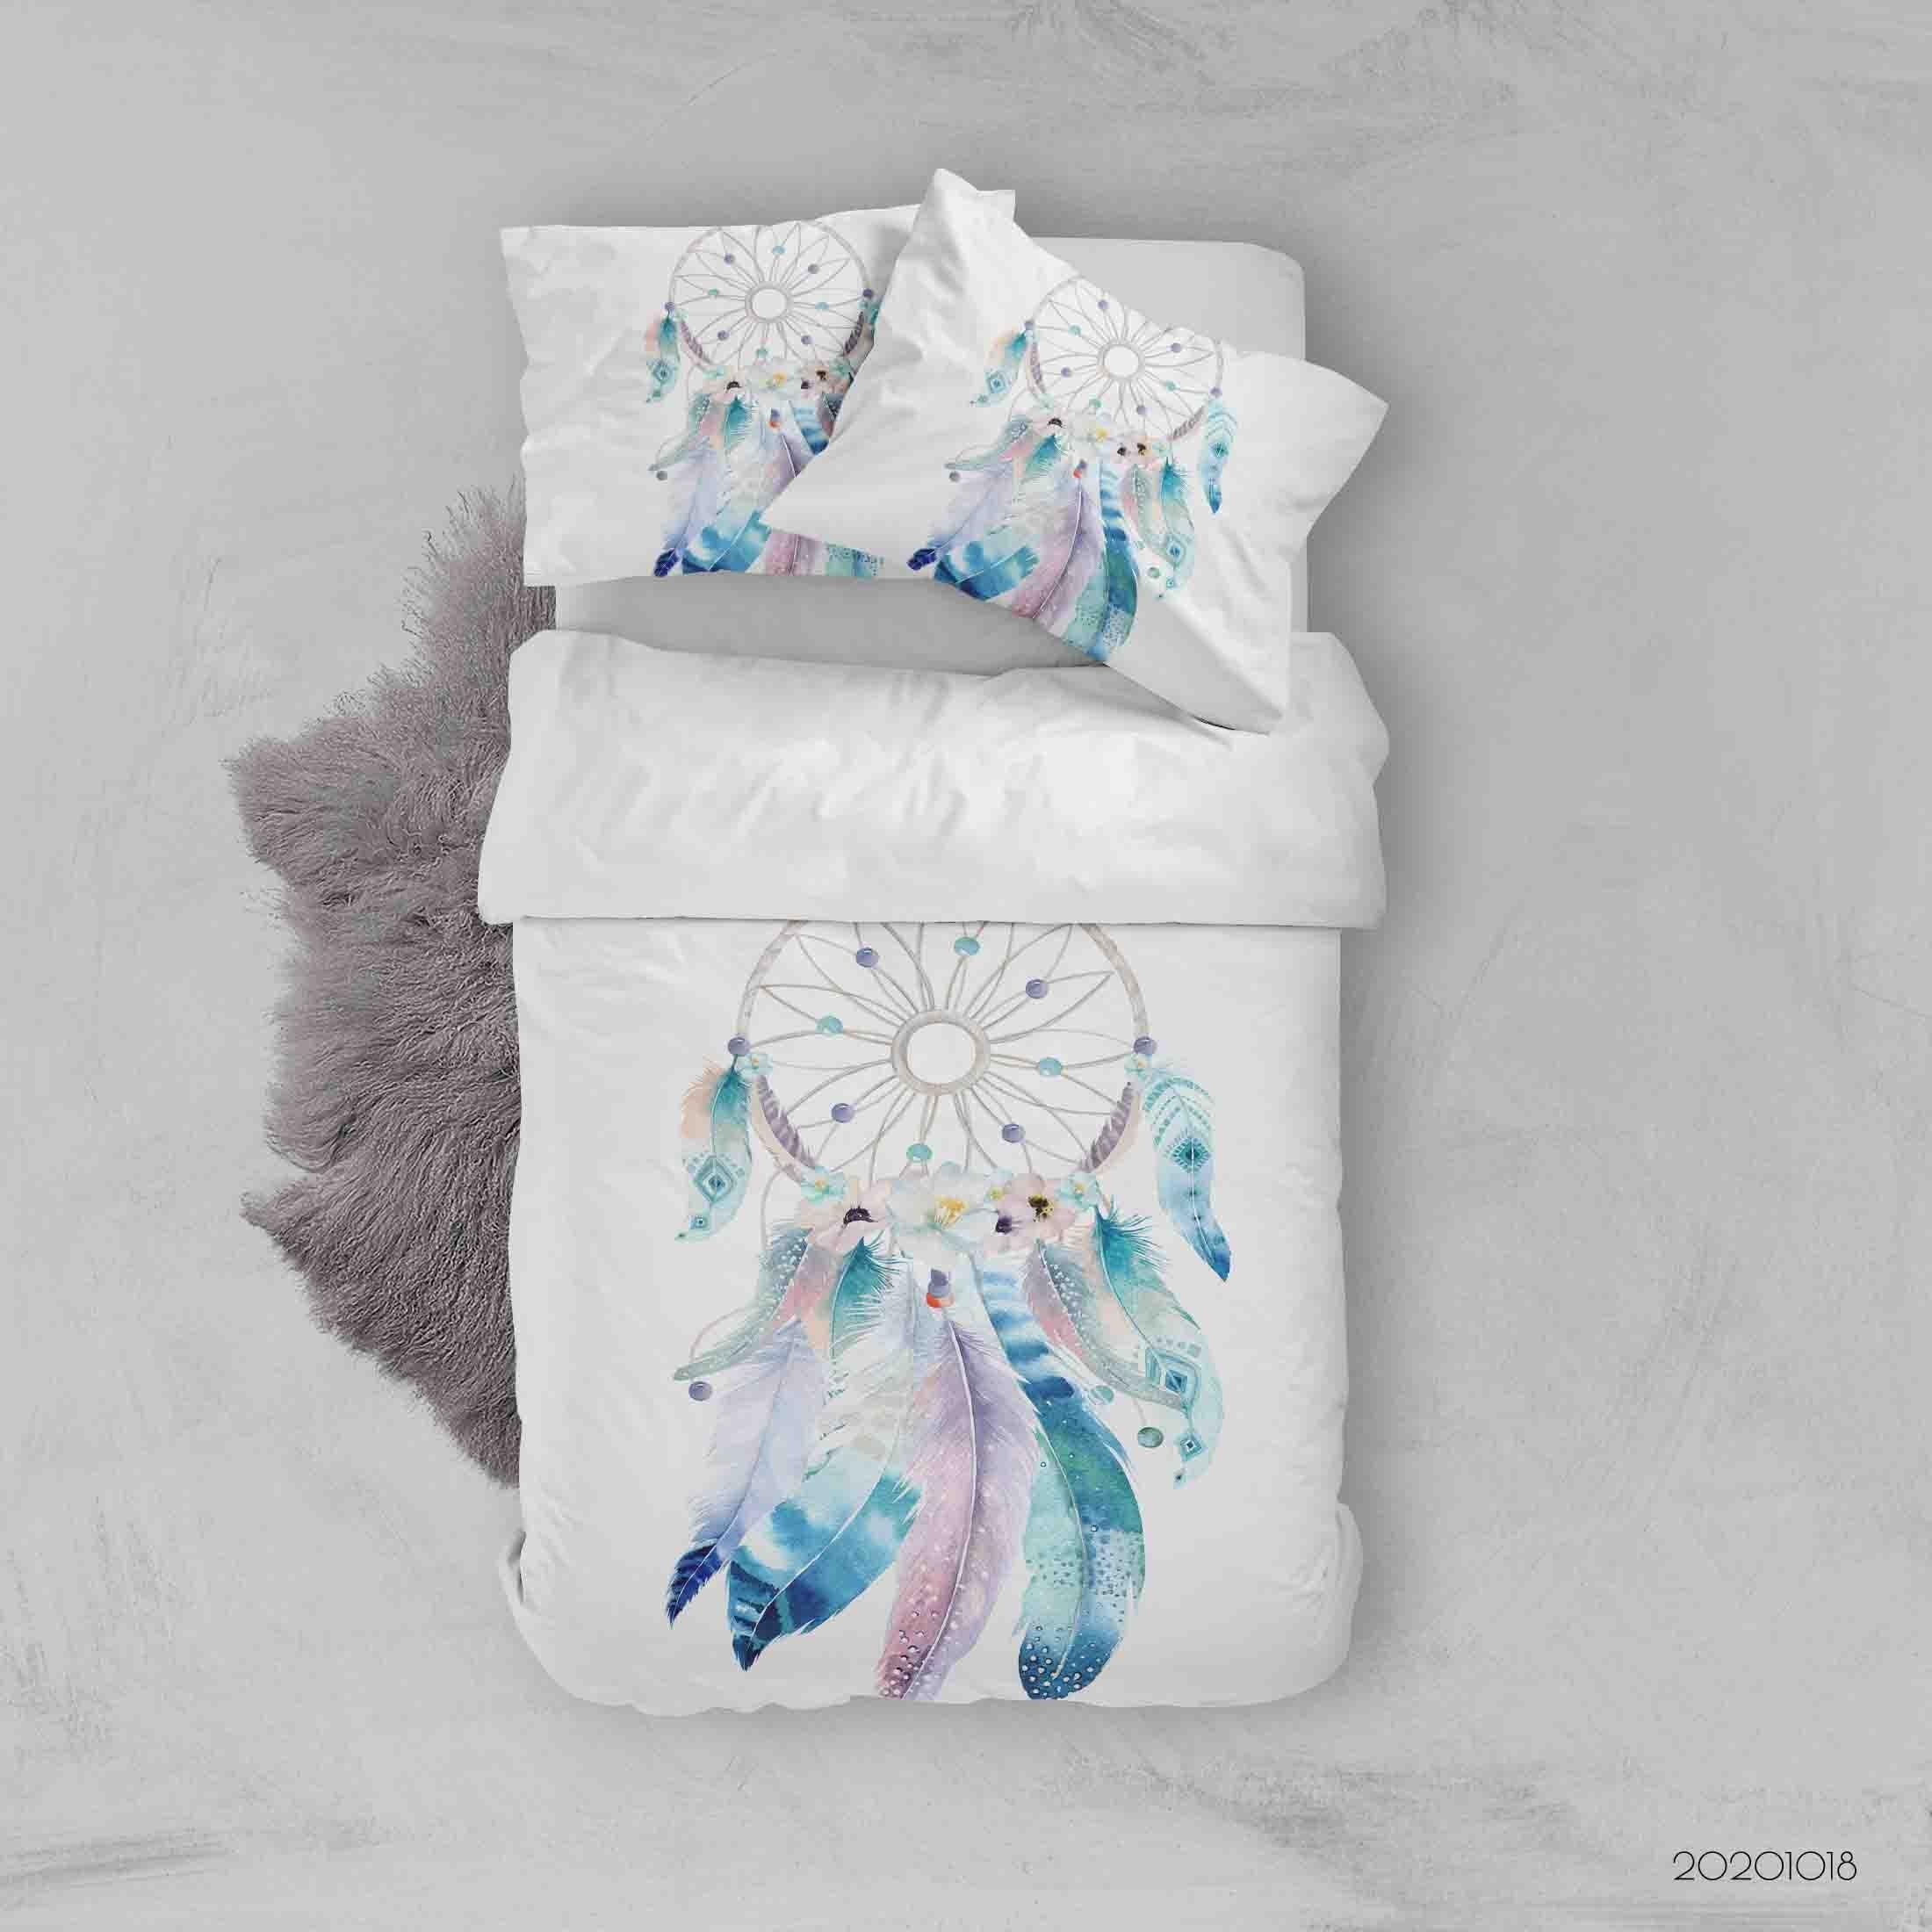 3D Watercolor Dream Catcher Feather Quilt Cover Set Bedding Set Duvet Cover Pillowcases WJ 9750- Jess Art Decoration